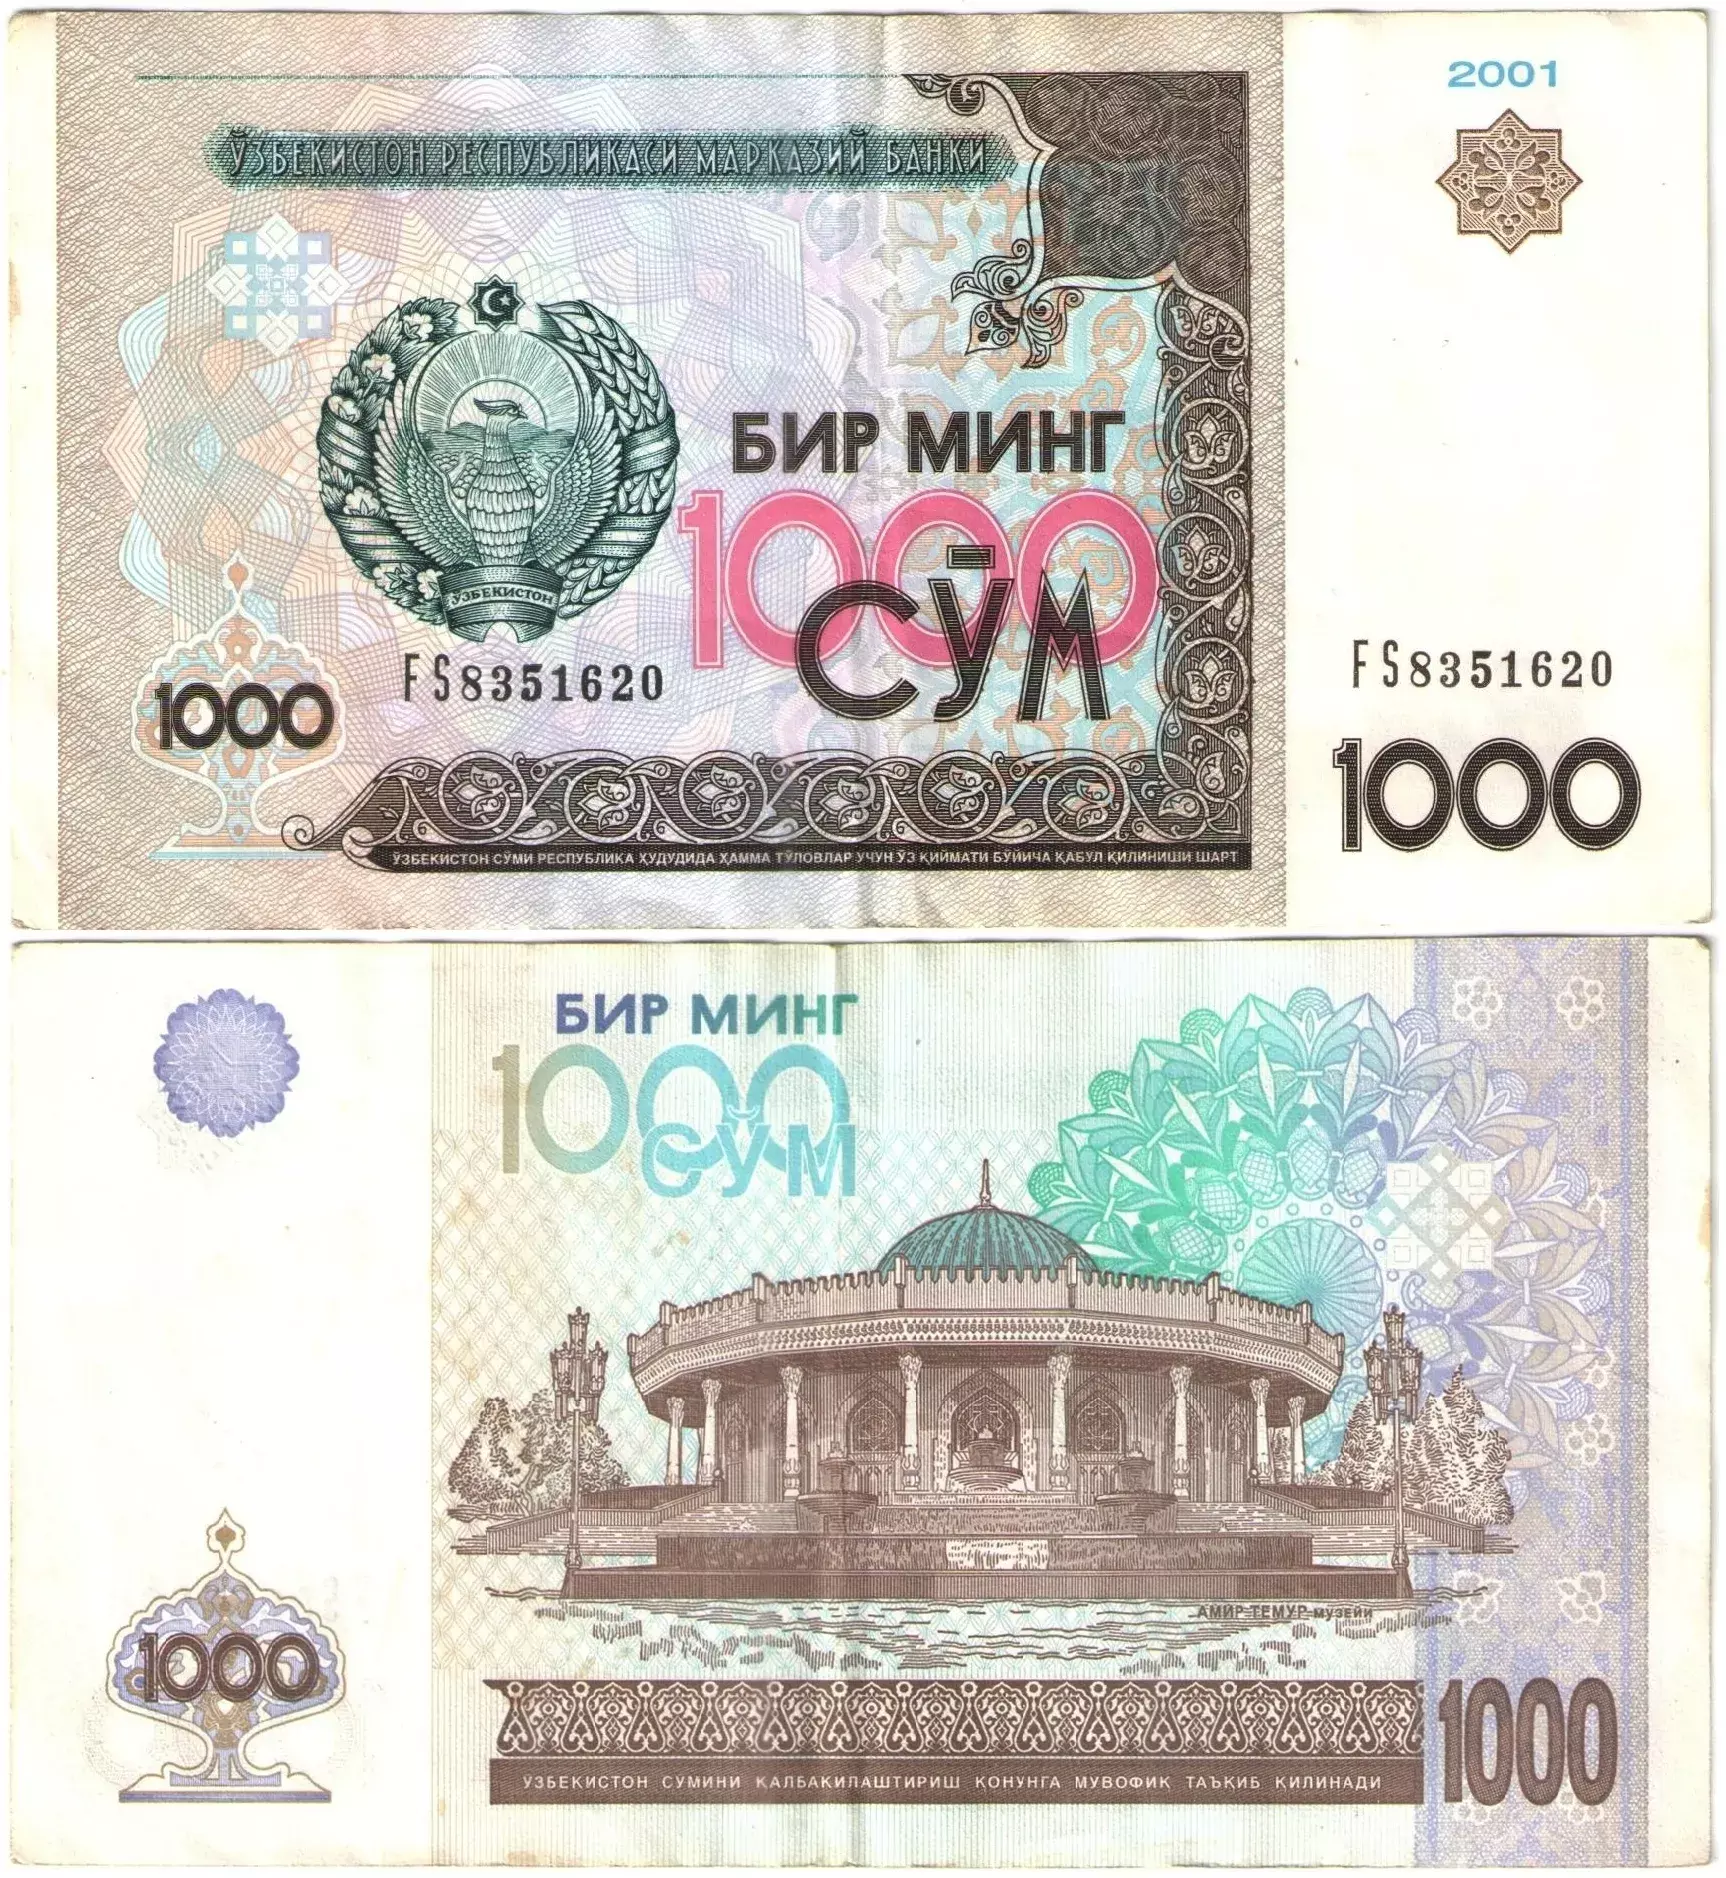 Сум купюра. Купюры Узбекистана. 1 000 Сум. Купюра 1000 2001 года. 1000 Сум в рублях.